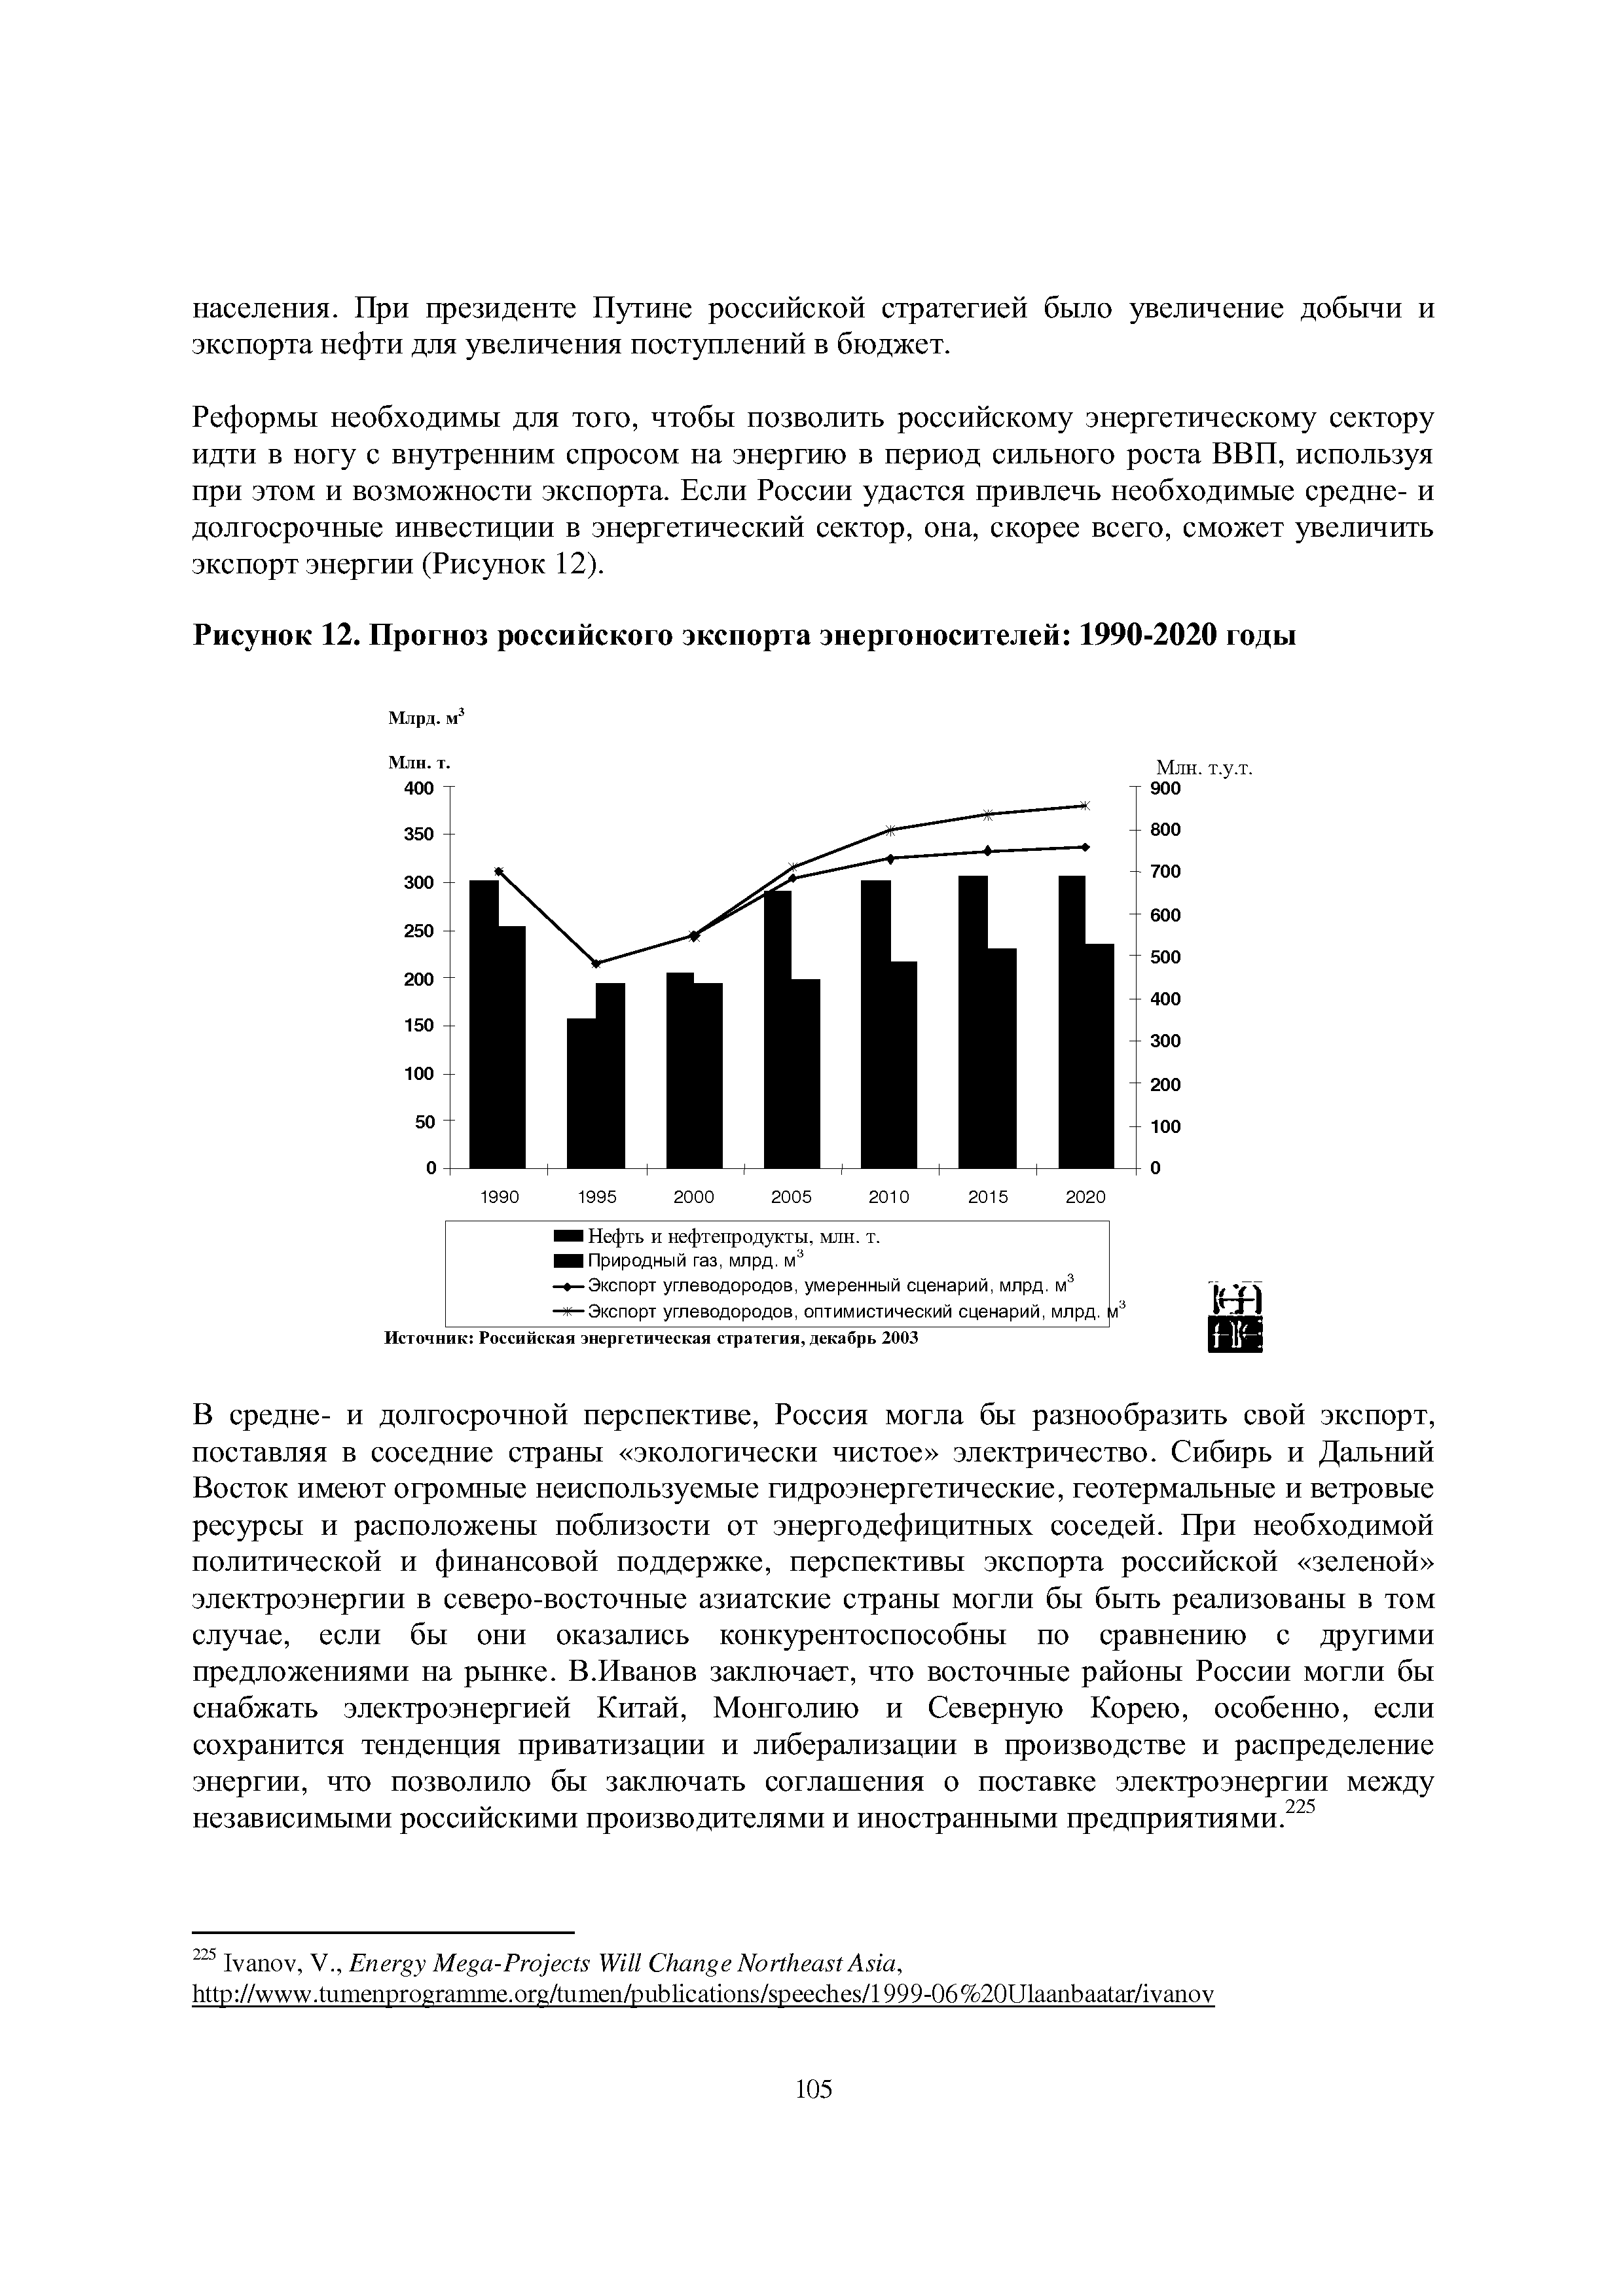 Рисунок 12. Прогноз российского экспорта энергоносителей 1990-2020 годы
